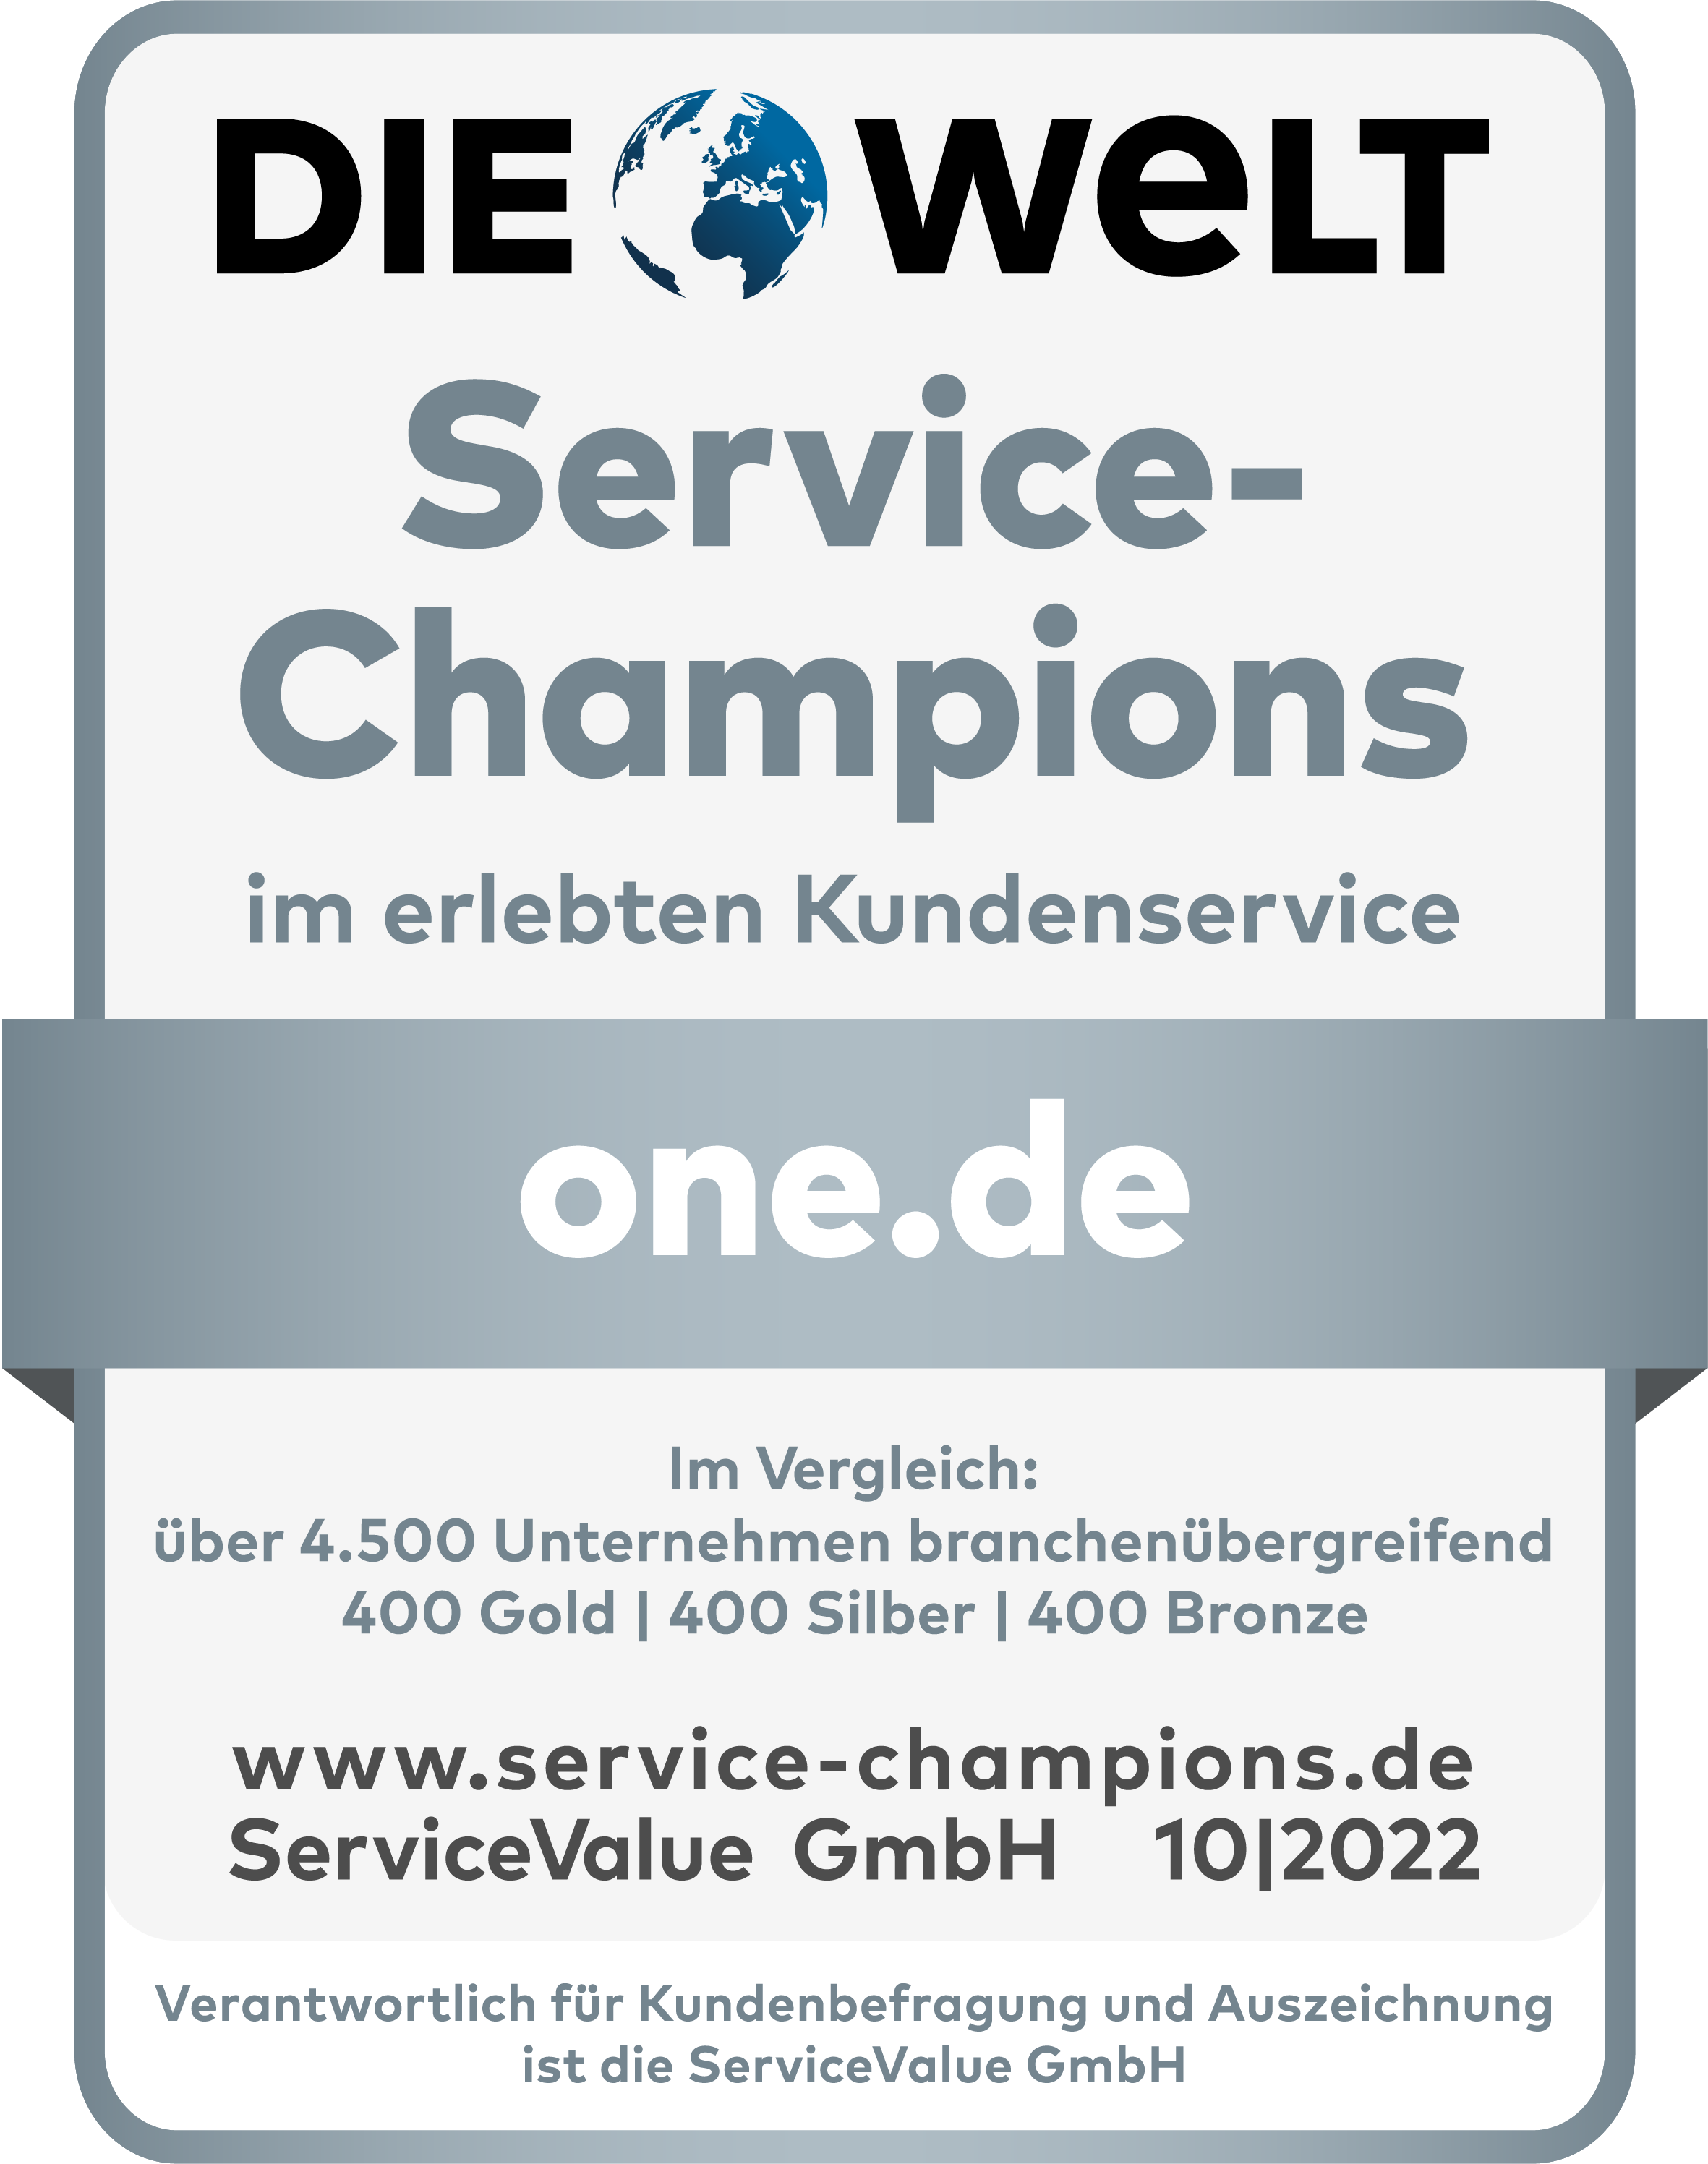 Die Welt Service Champions